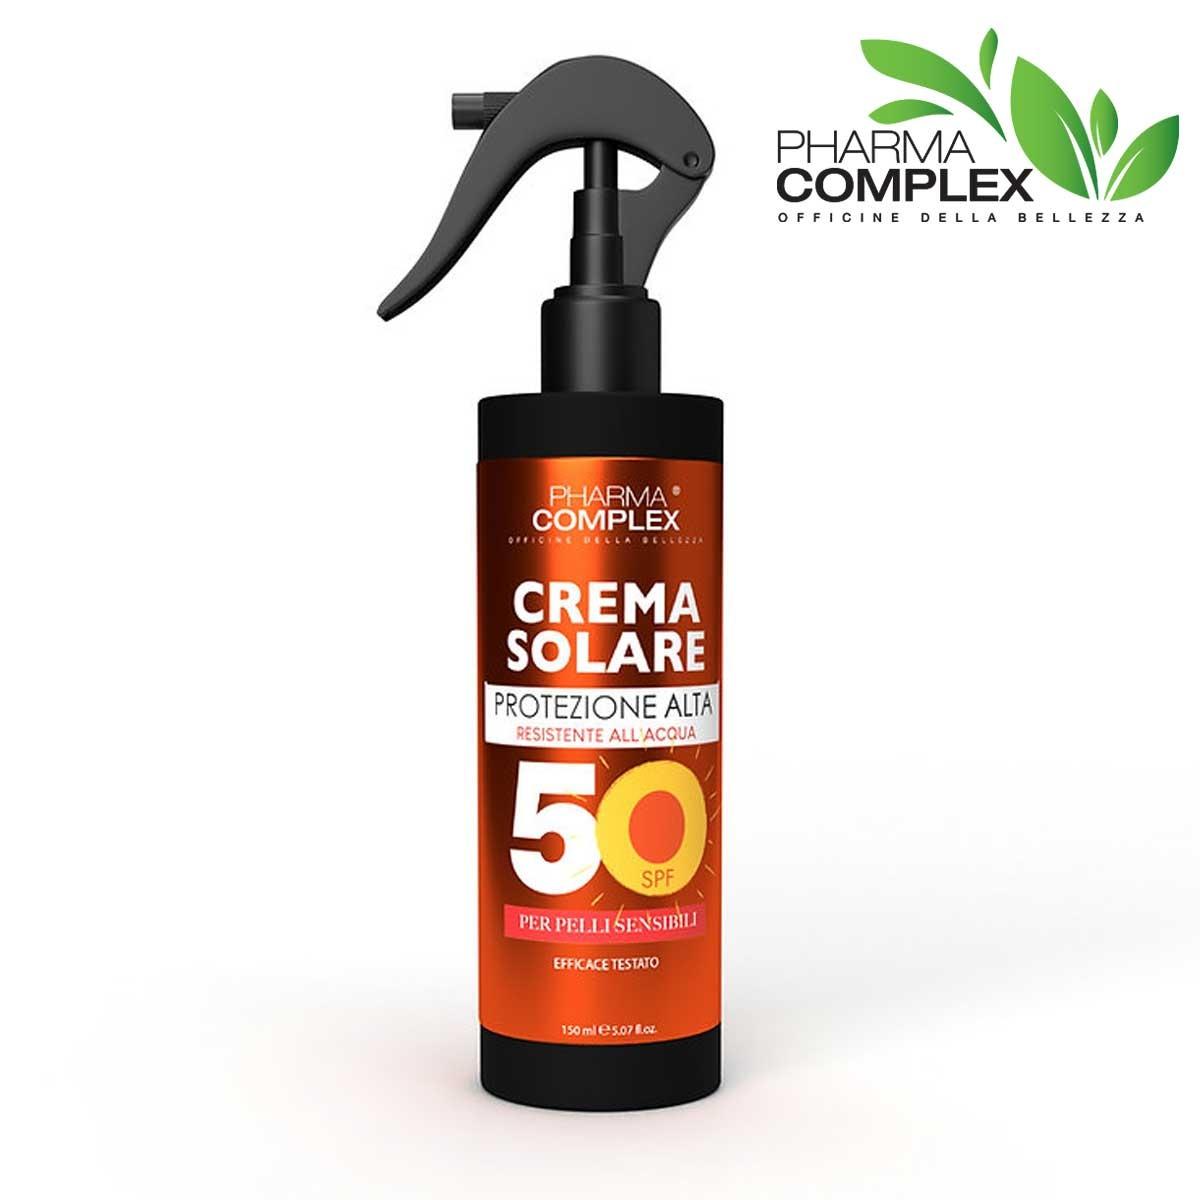 Pharma crema solare protezione alta spf 50 150 ml